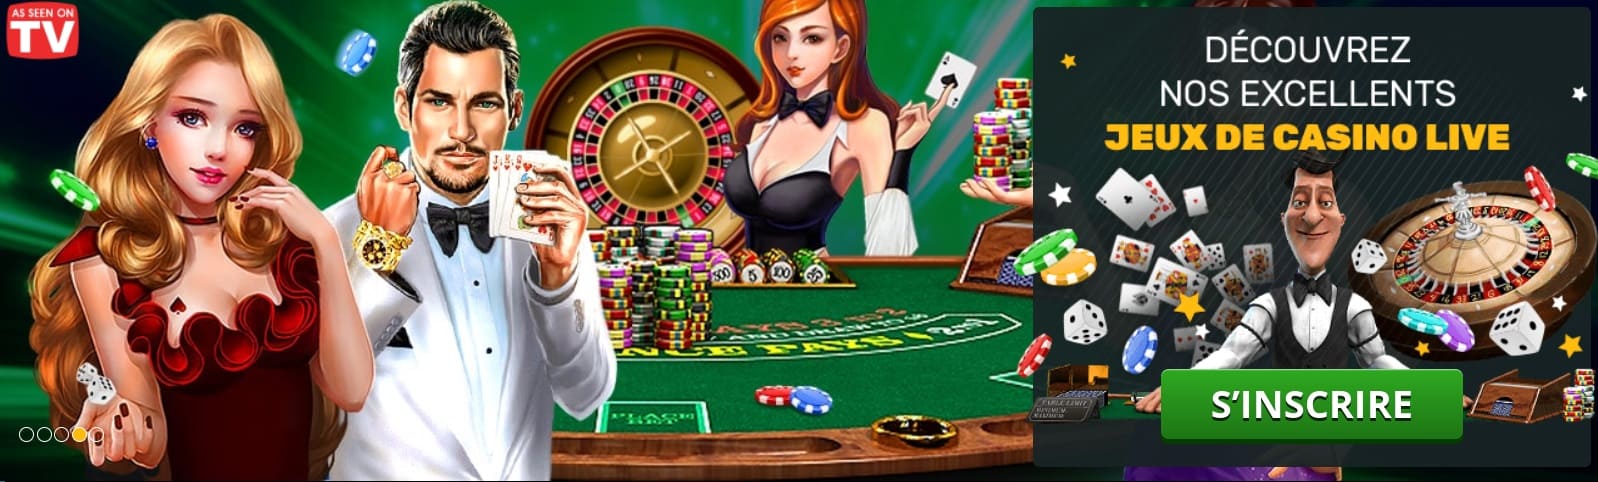 Play Amo jeux de casino live